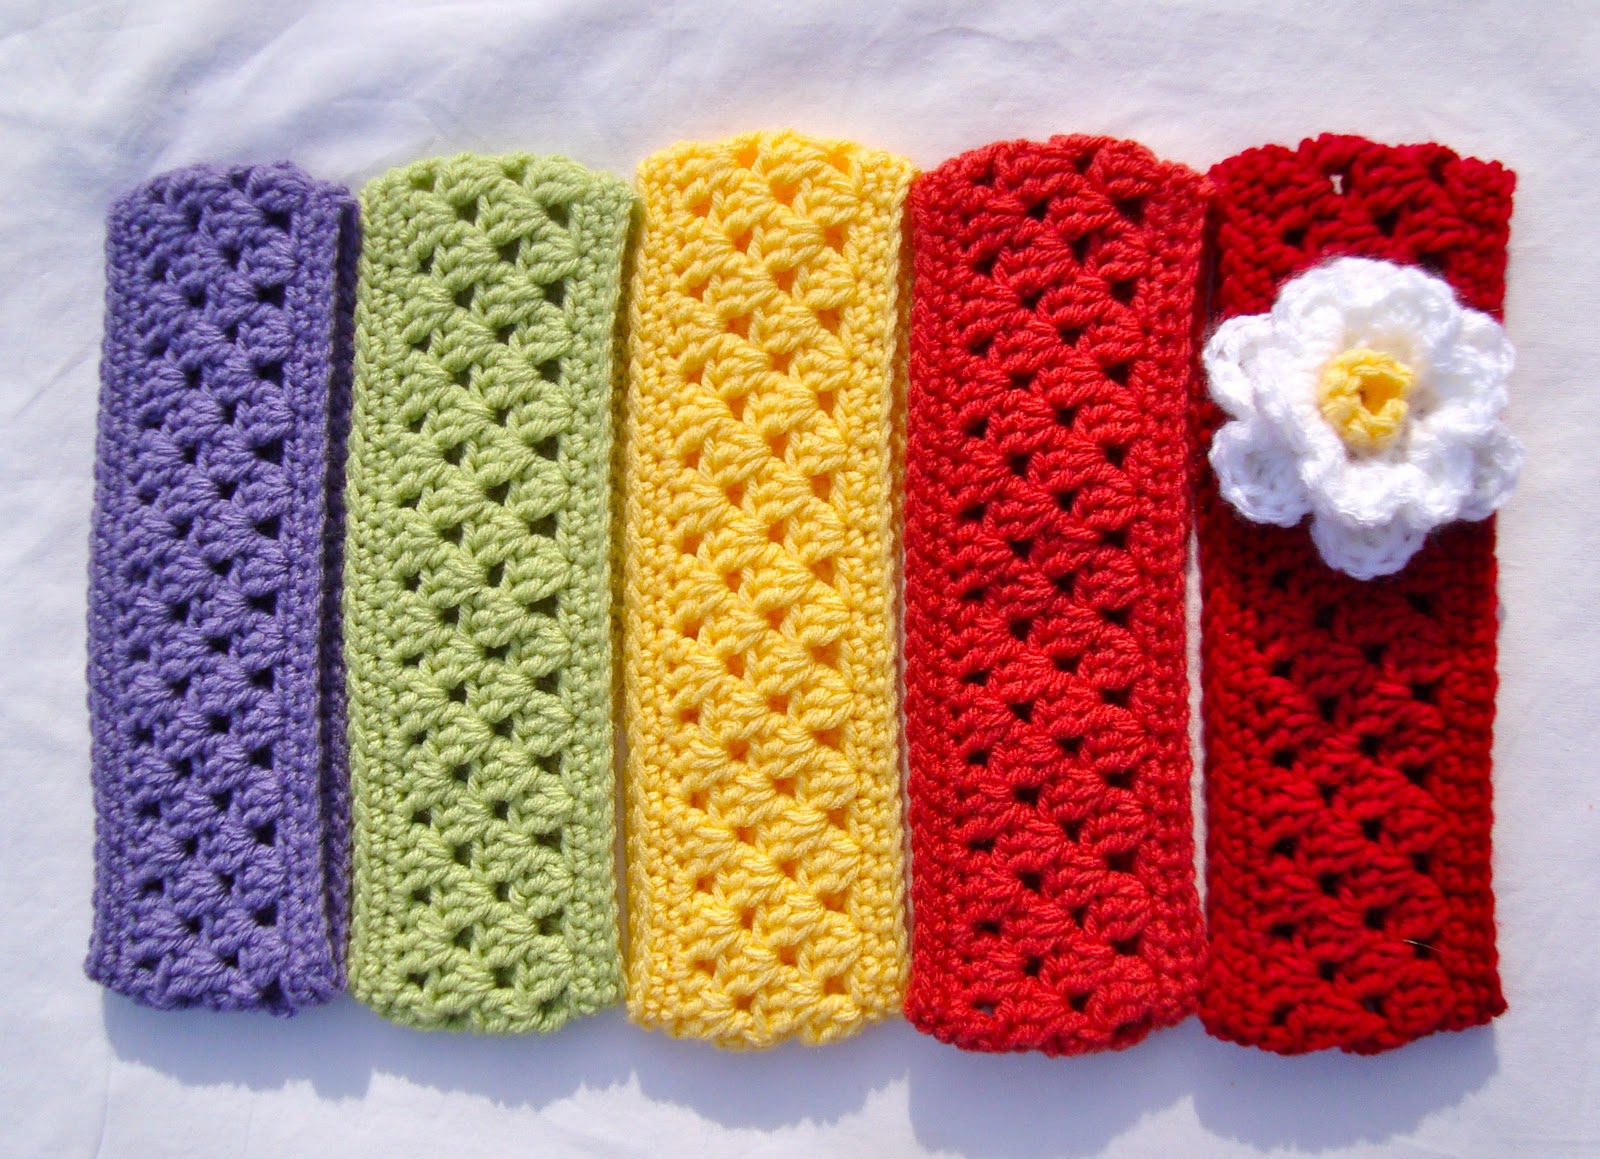 Crochet Headband With Flower Pattern 16 Crochet Ear Warmer Patterns Guide Patterns